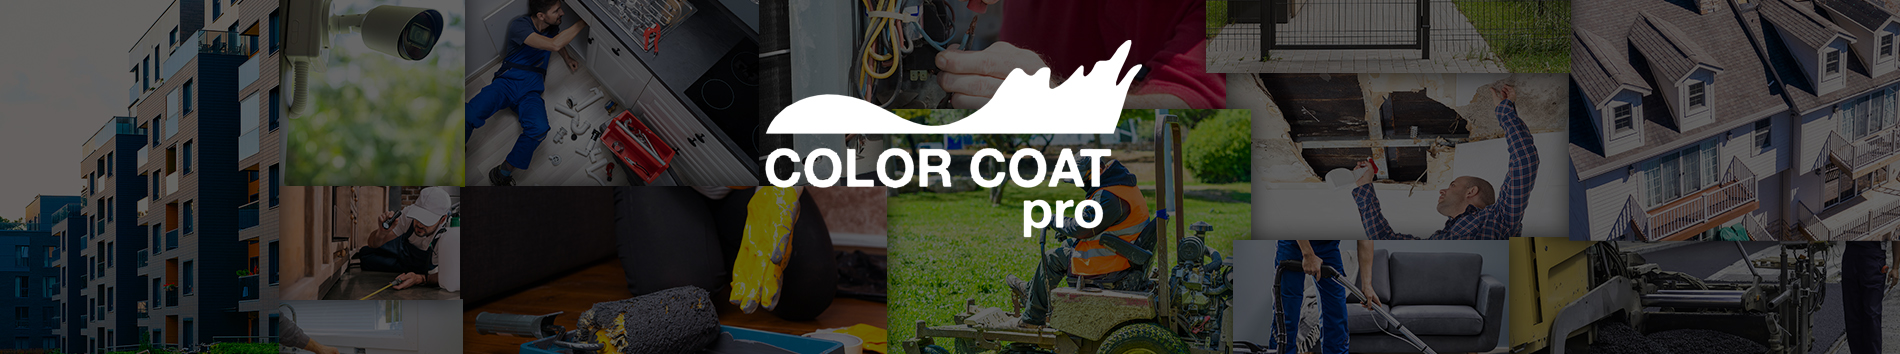 Color Coat Pro